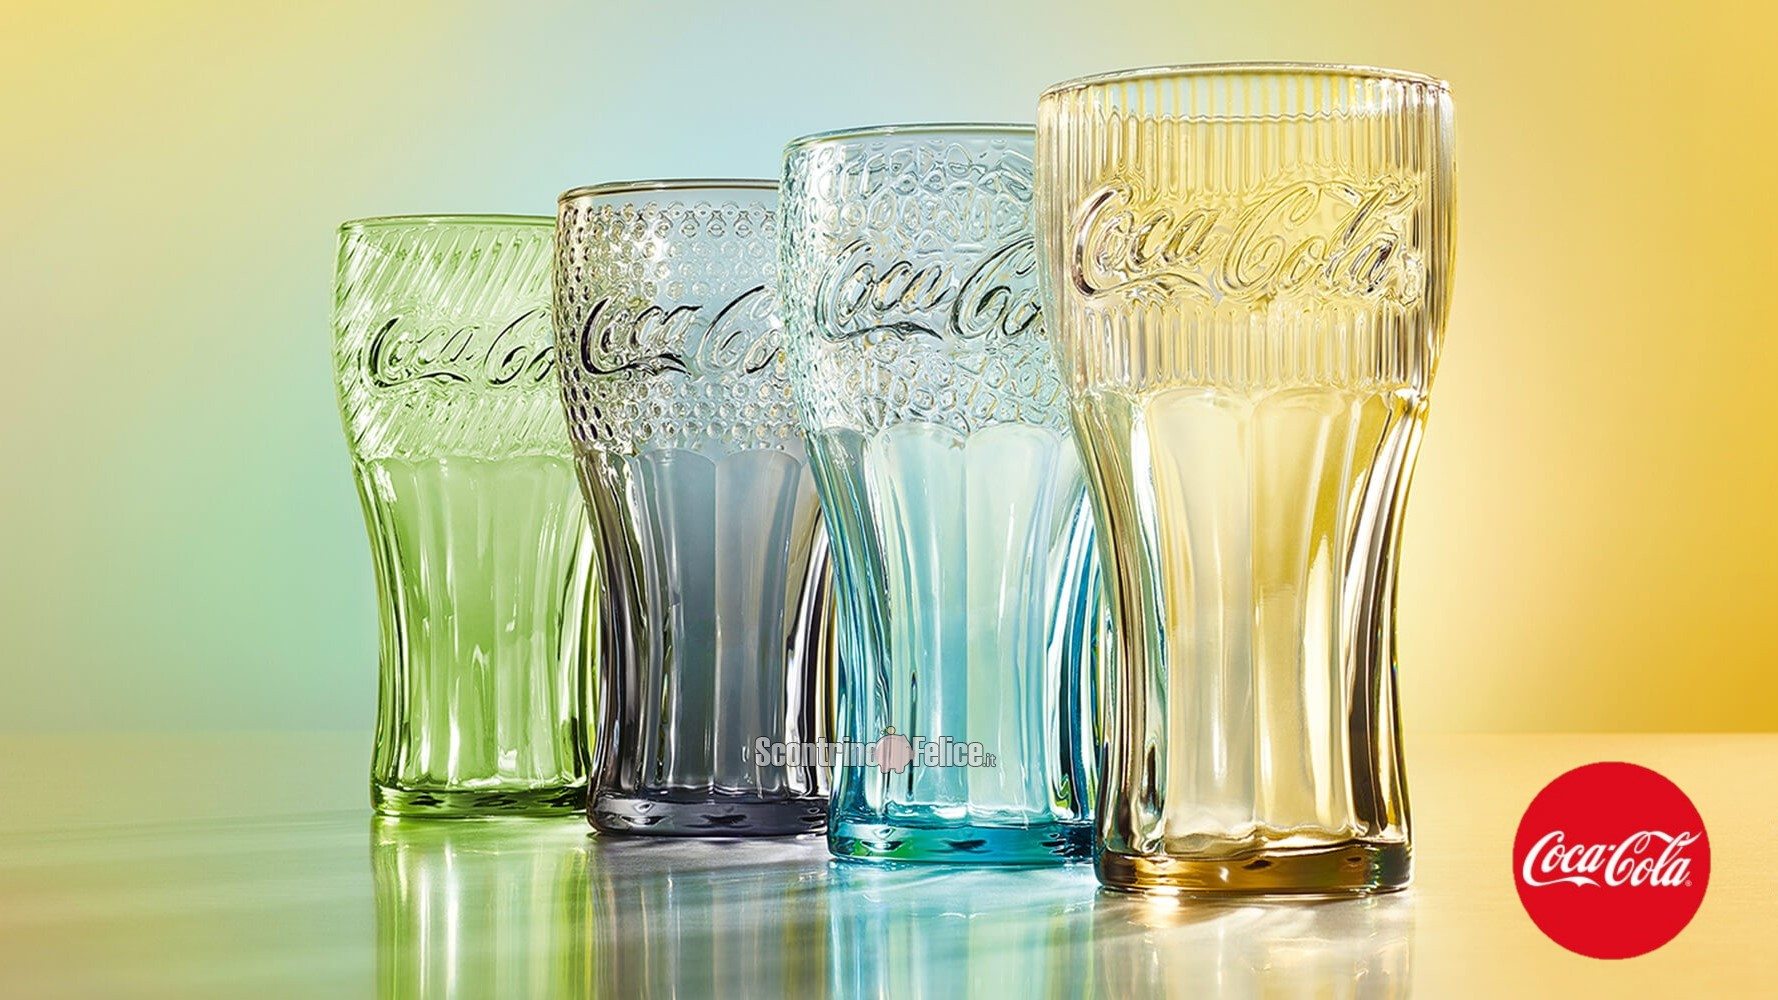 Bicchieri Coca Cola in regalo da McDonanld's: scopri come averli!